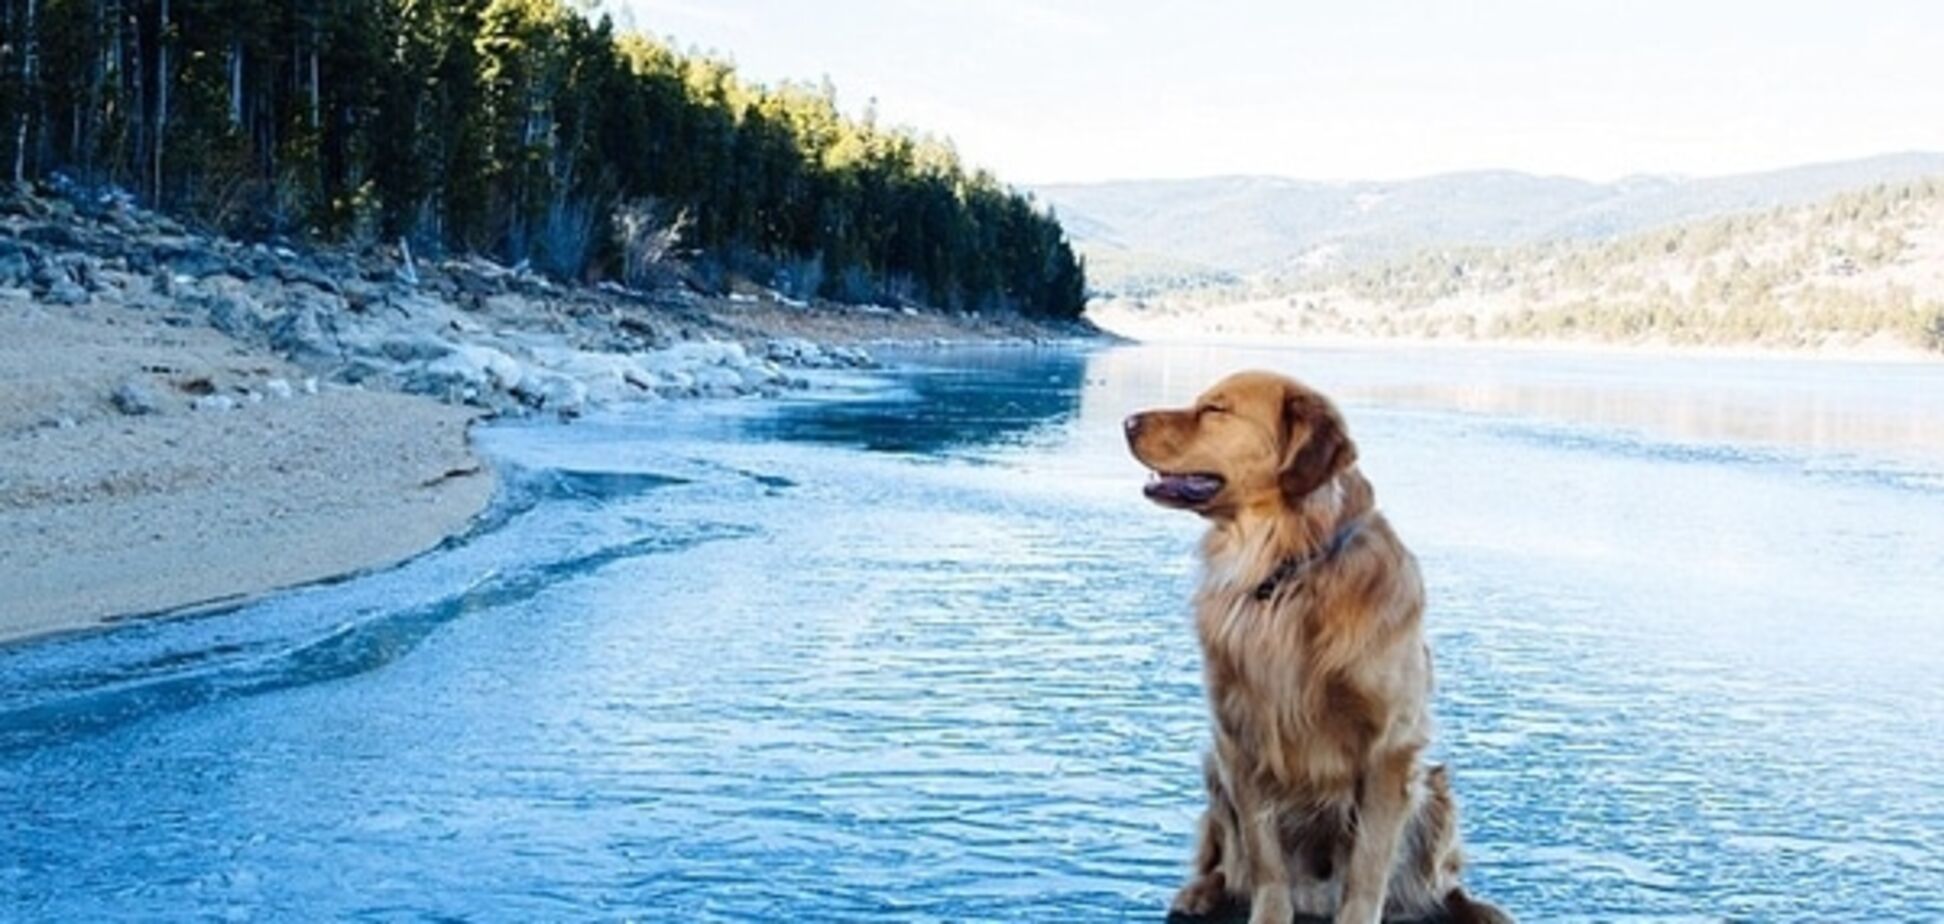 Парень со своим псом путешествует по миру: фото неразлучных друзей